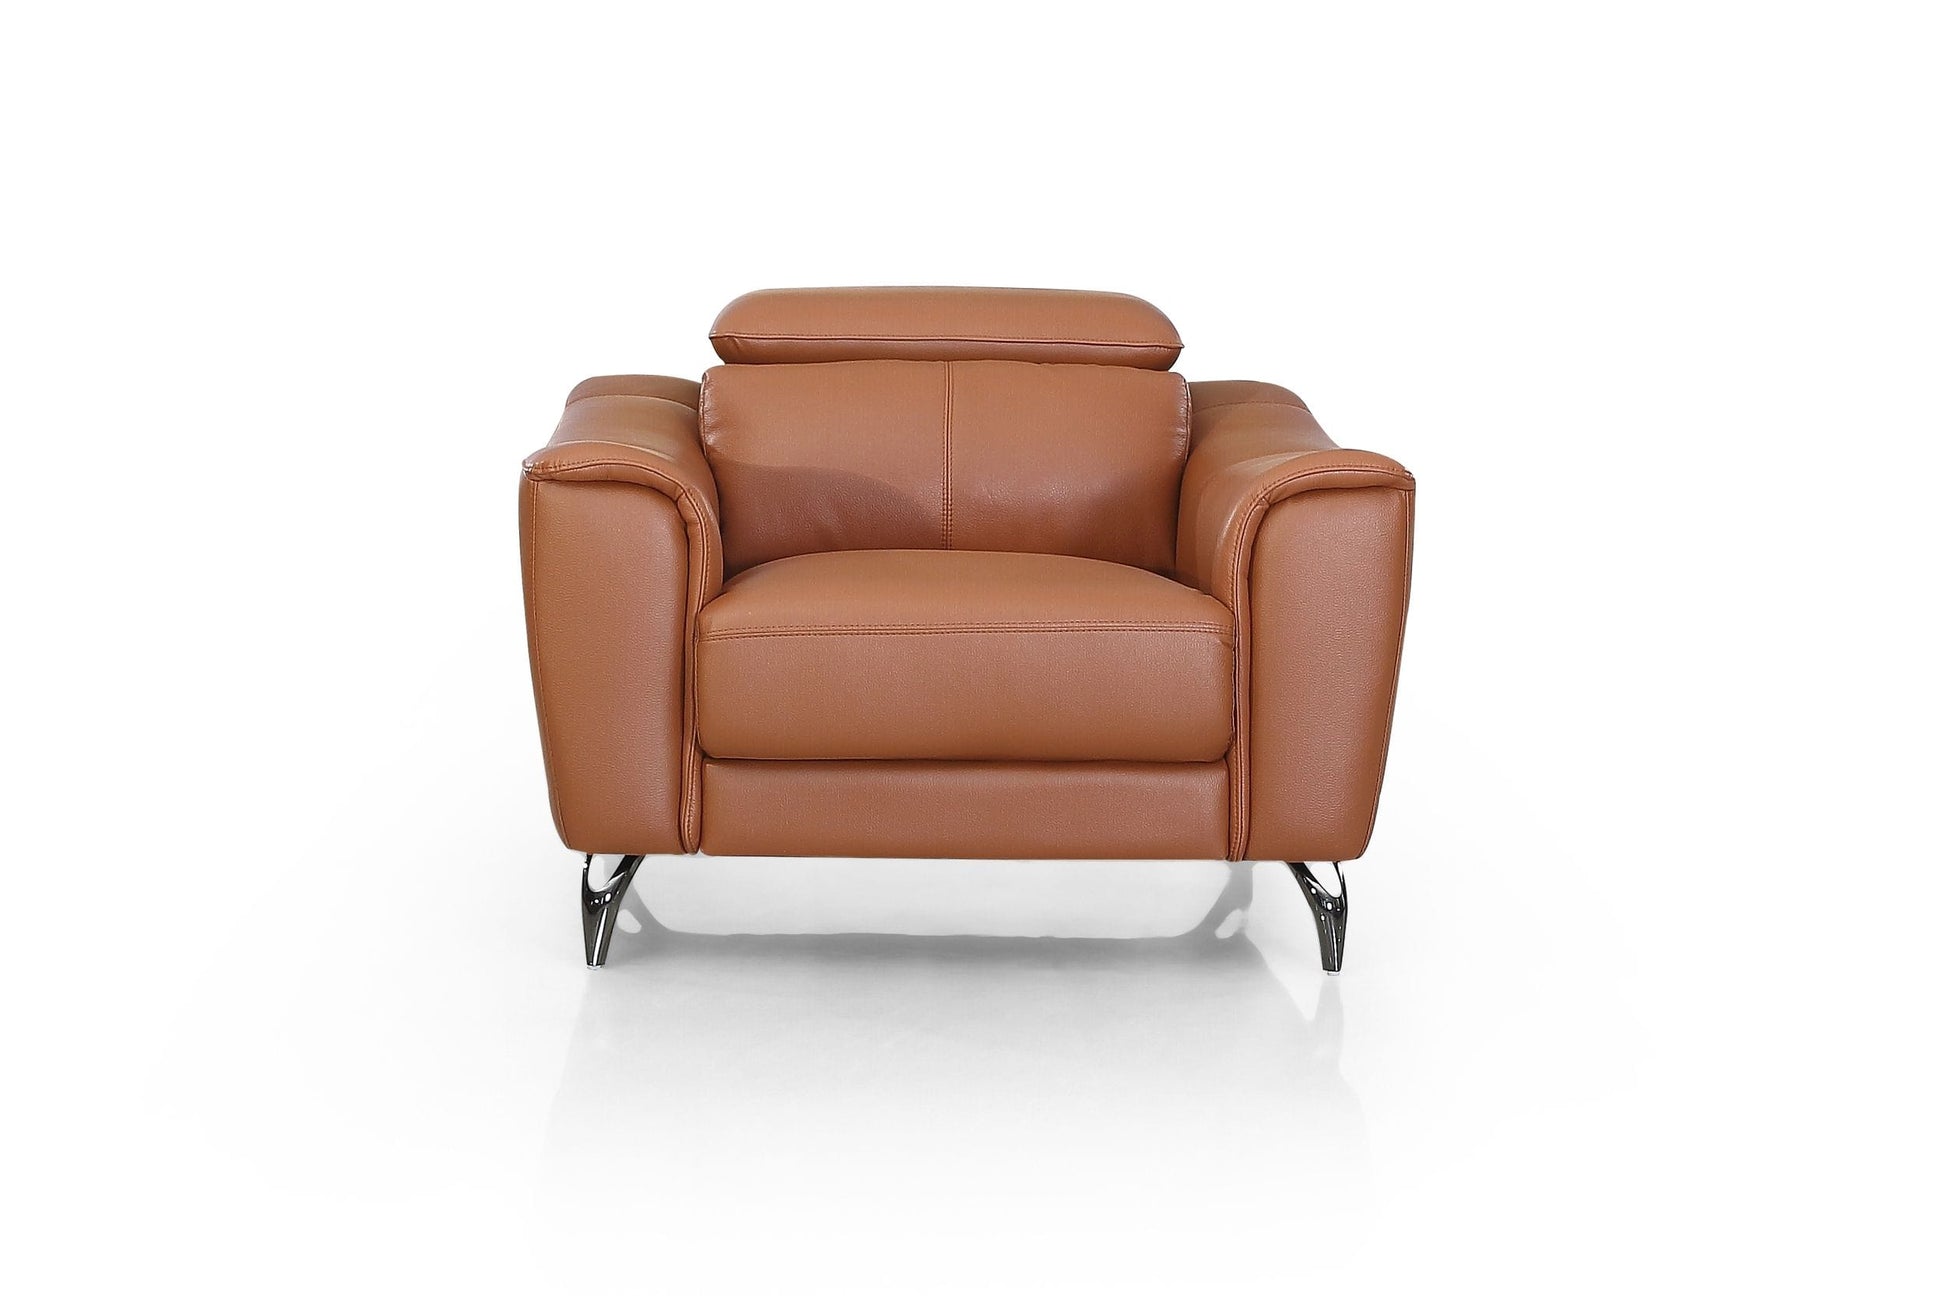 VIG Furniture Divani Casa Danis Cognac Leather Brown Chair